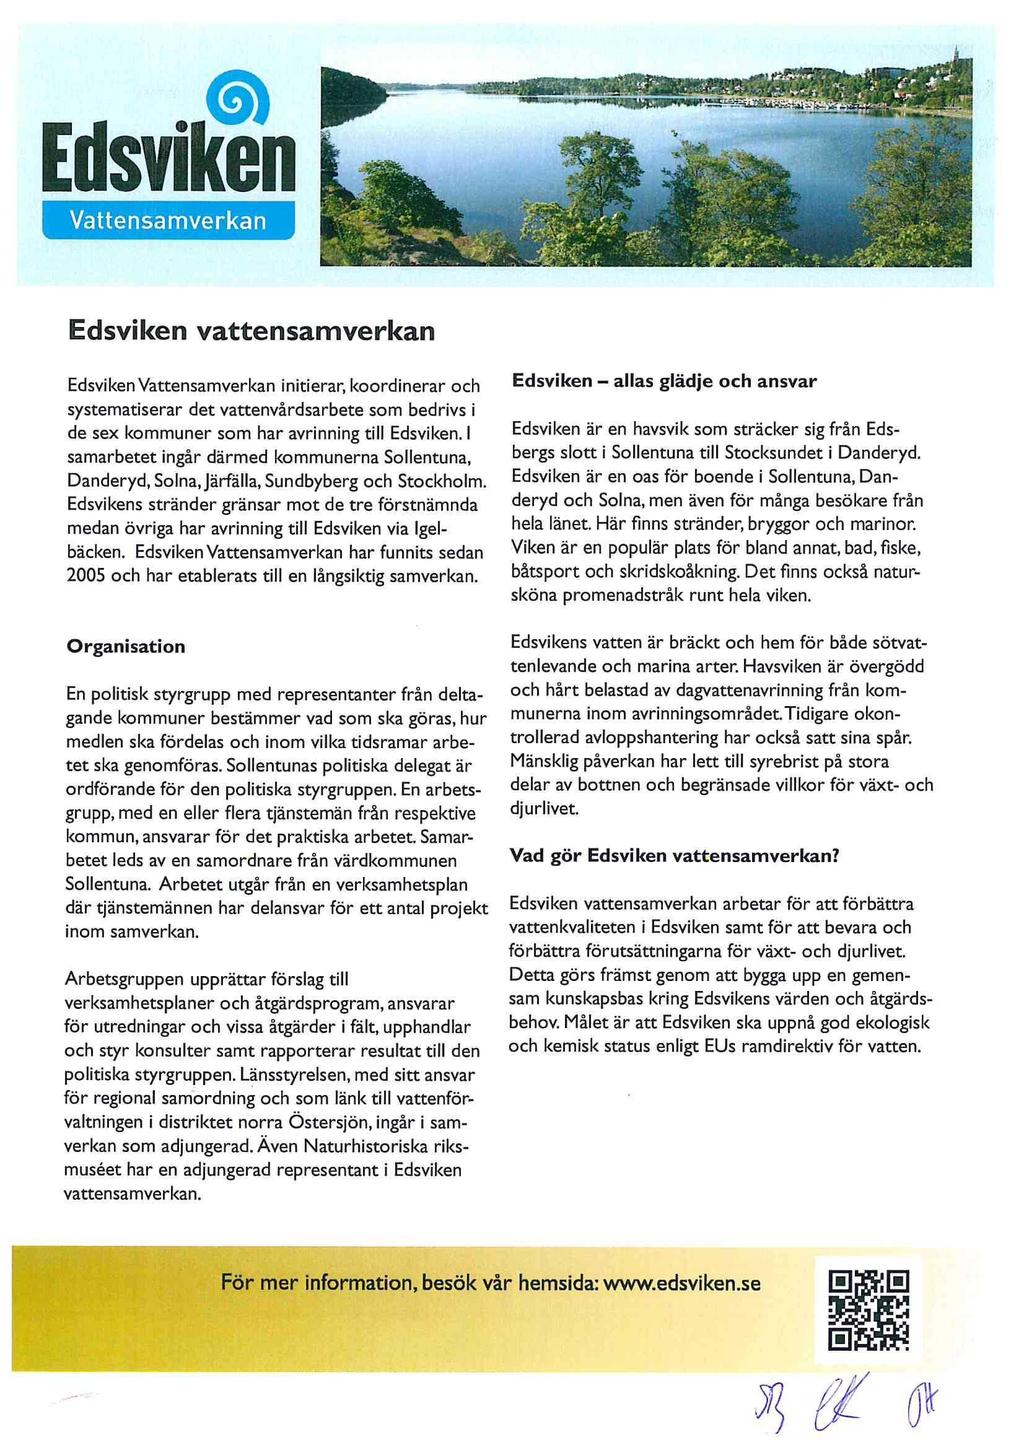 Vattensamverkan Edsviken vattensamverkan Edsviken Vattensamverkan initierar, koordinerar och systematiserar det vattenvårdsarbete som bedrivs i de sex kommuner som har avrinning till Edsviken.